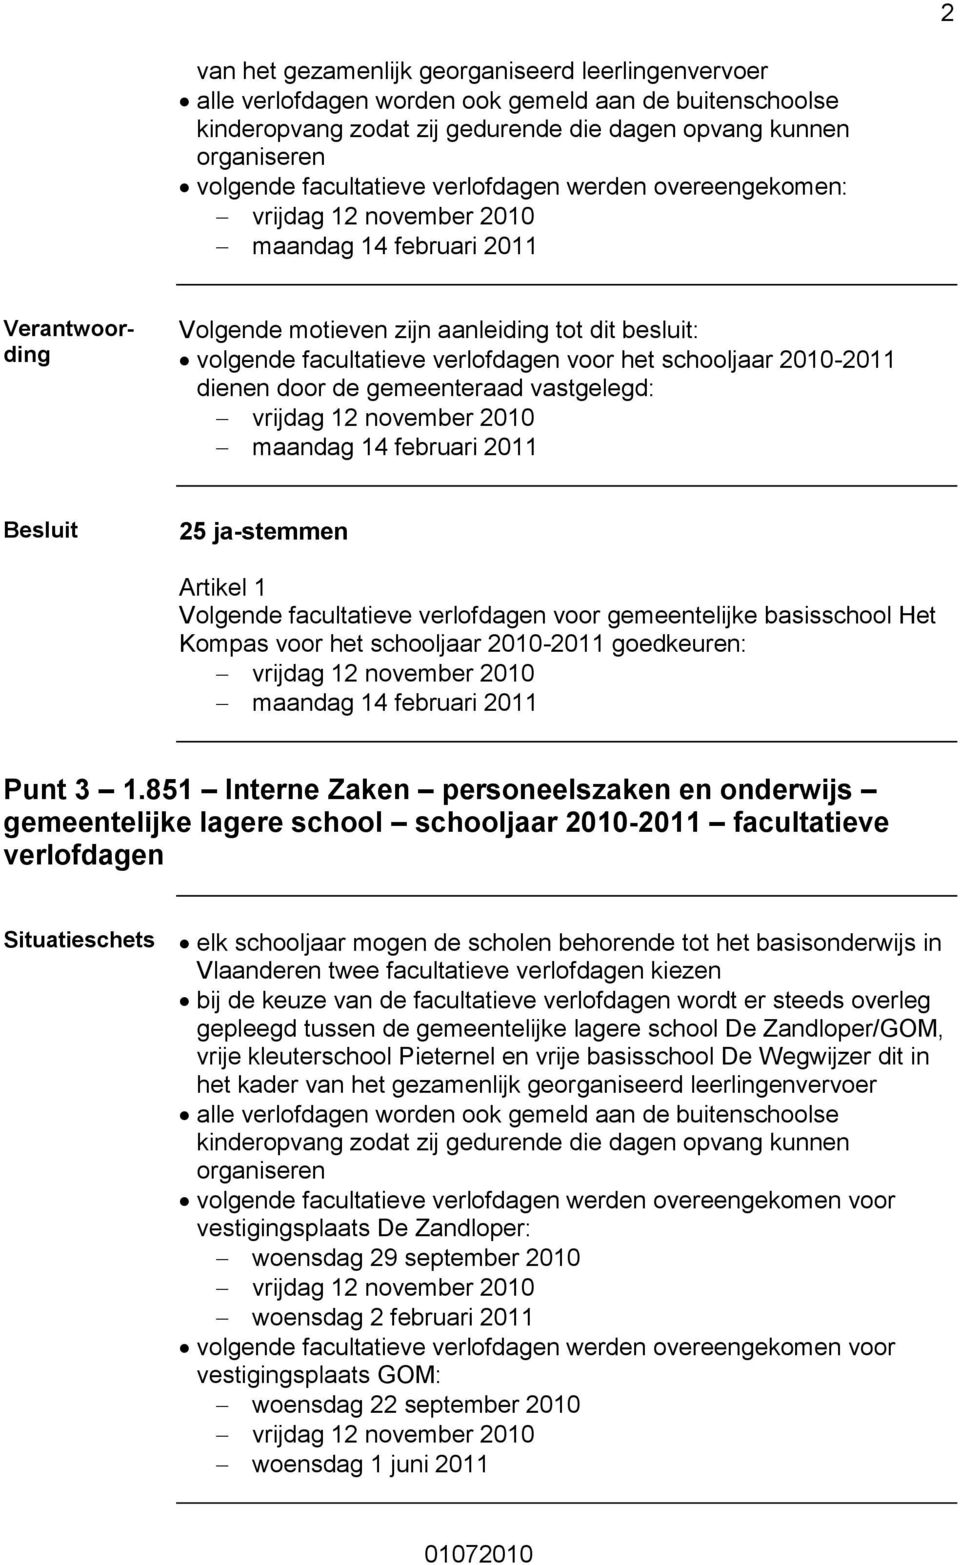 2011 Volgende facultatieve verlofdagen voor gemeentelijke basisschool Het Kompas voor het schooljaar 2010-2011 goedkeuren: maandag 14 februari 2011 Punt 3 1.